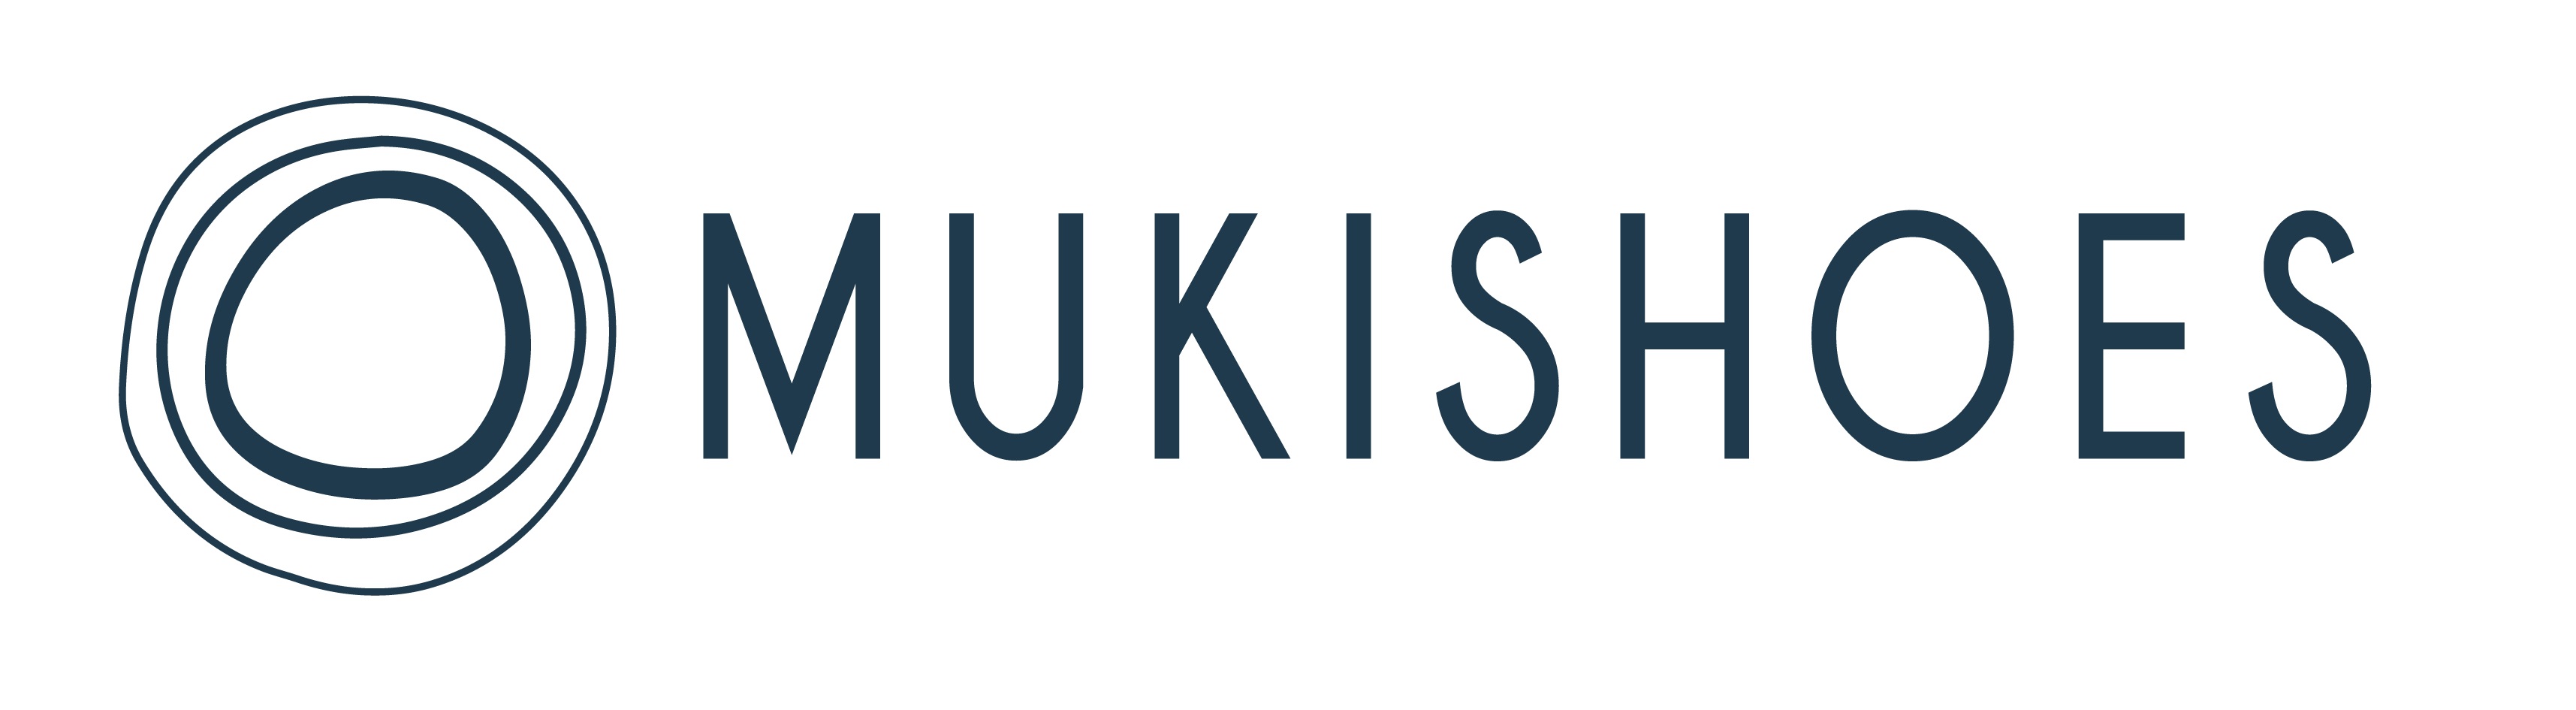 Mukishoes logo